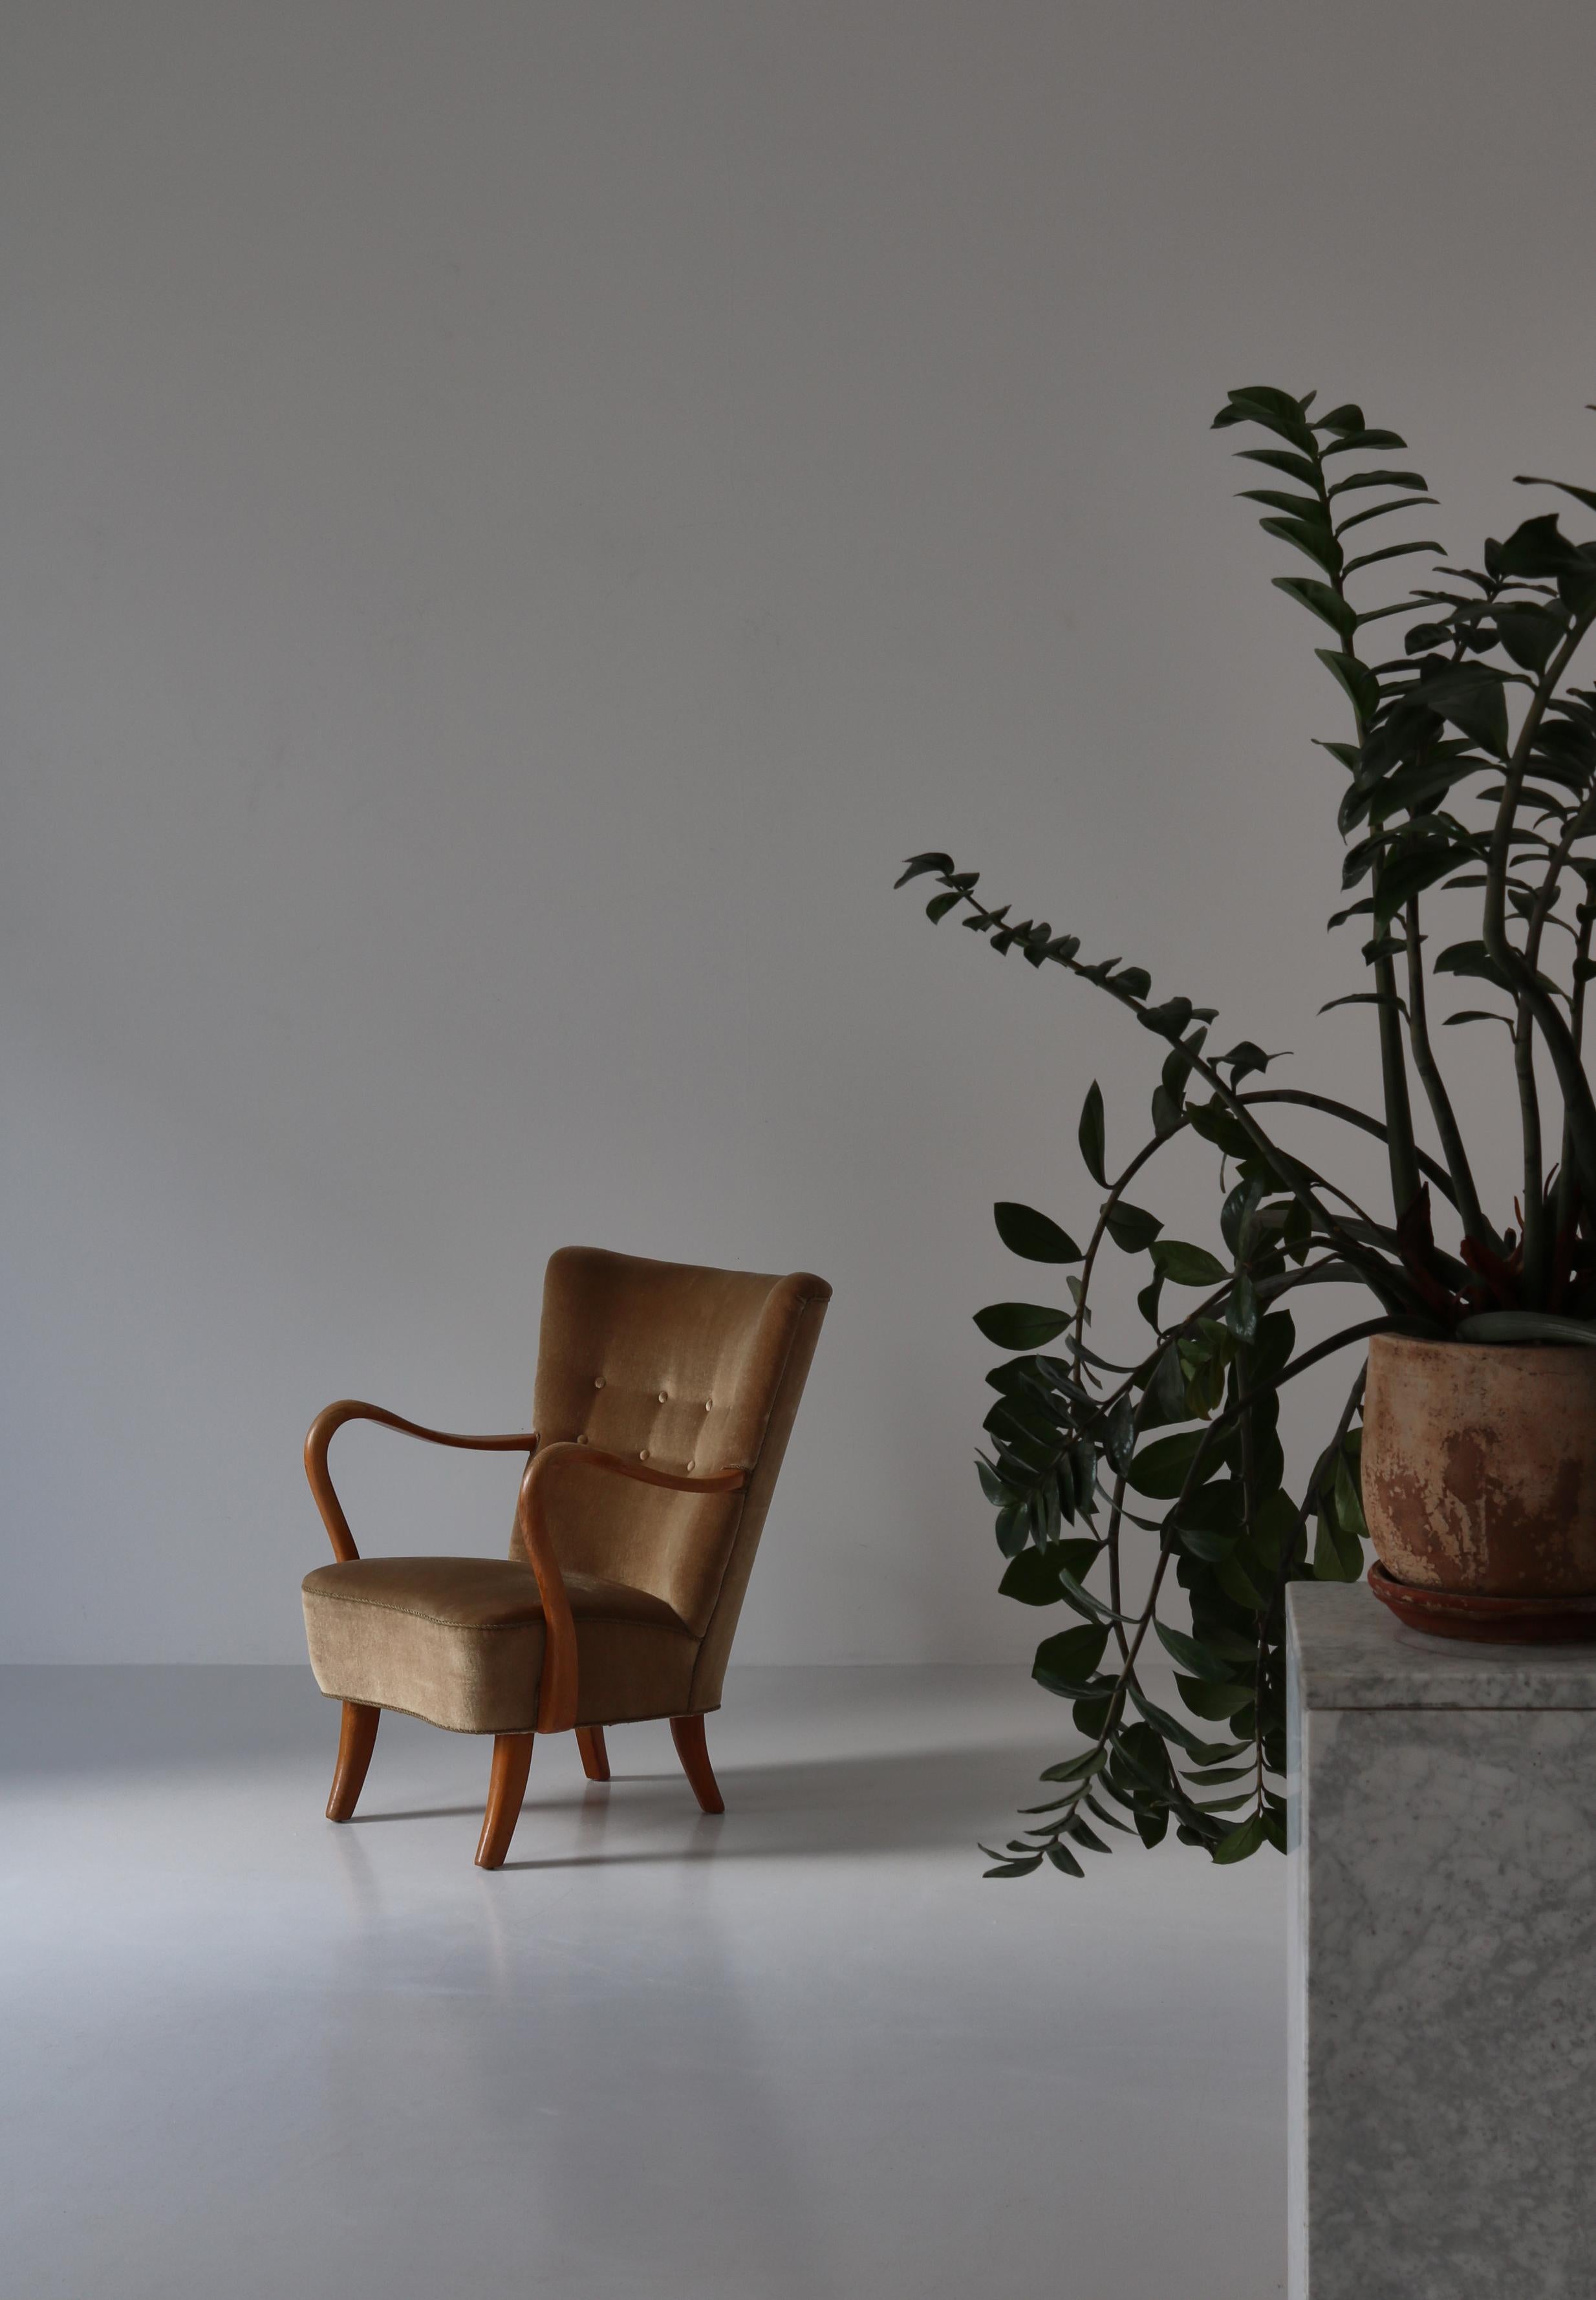 Sillón diseñado por Alfred Christensen a principios de los años 50 y fabricado por Slagelse Møbelværk. Esta impresionante silla ha envejecido maravillosamente y la tapicería original de terciopelo y el acabado de madera tienen la pátina perfecta.